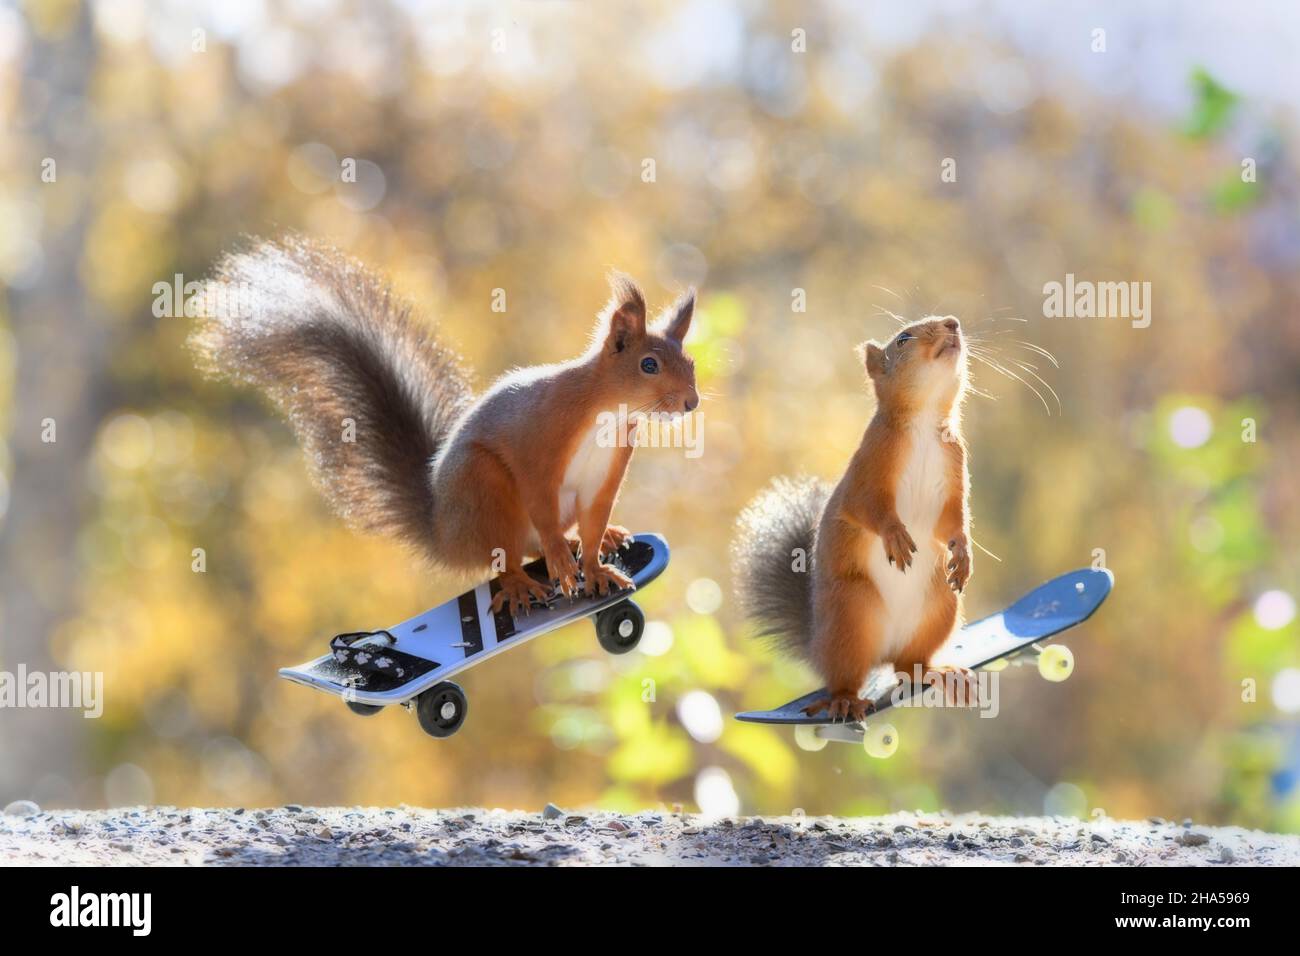 gli scoiattoli rossi sono in piedi sugli skateboard in aria Foto Stock